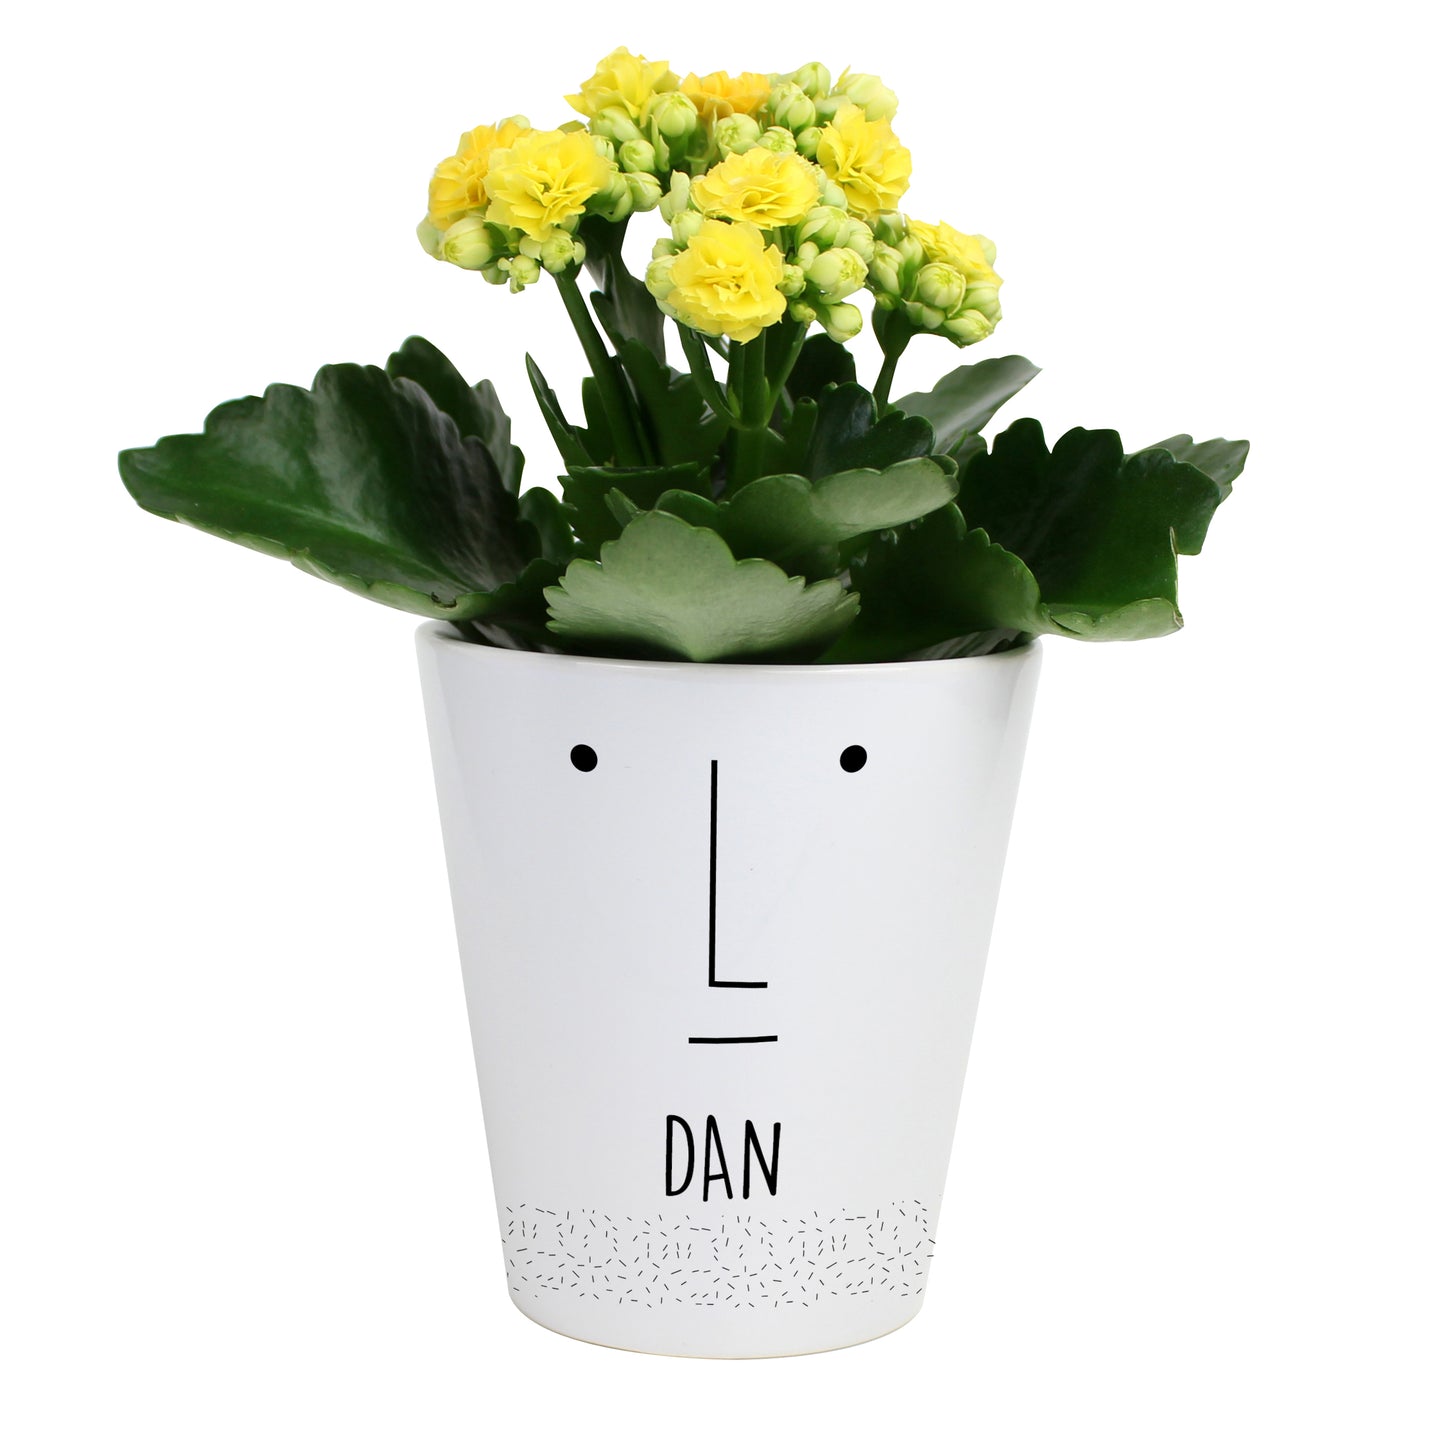 Personalised 'Mr Face' Ceramic Plant Pot